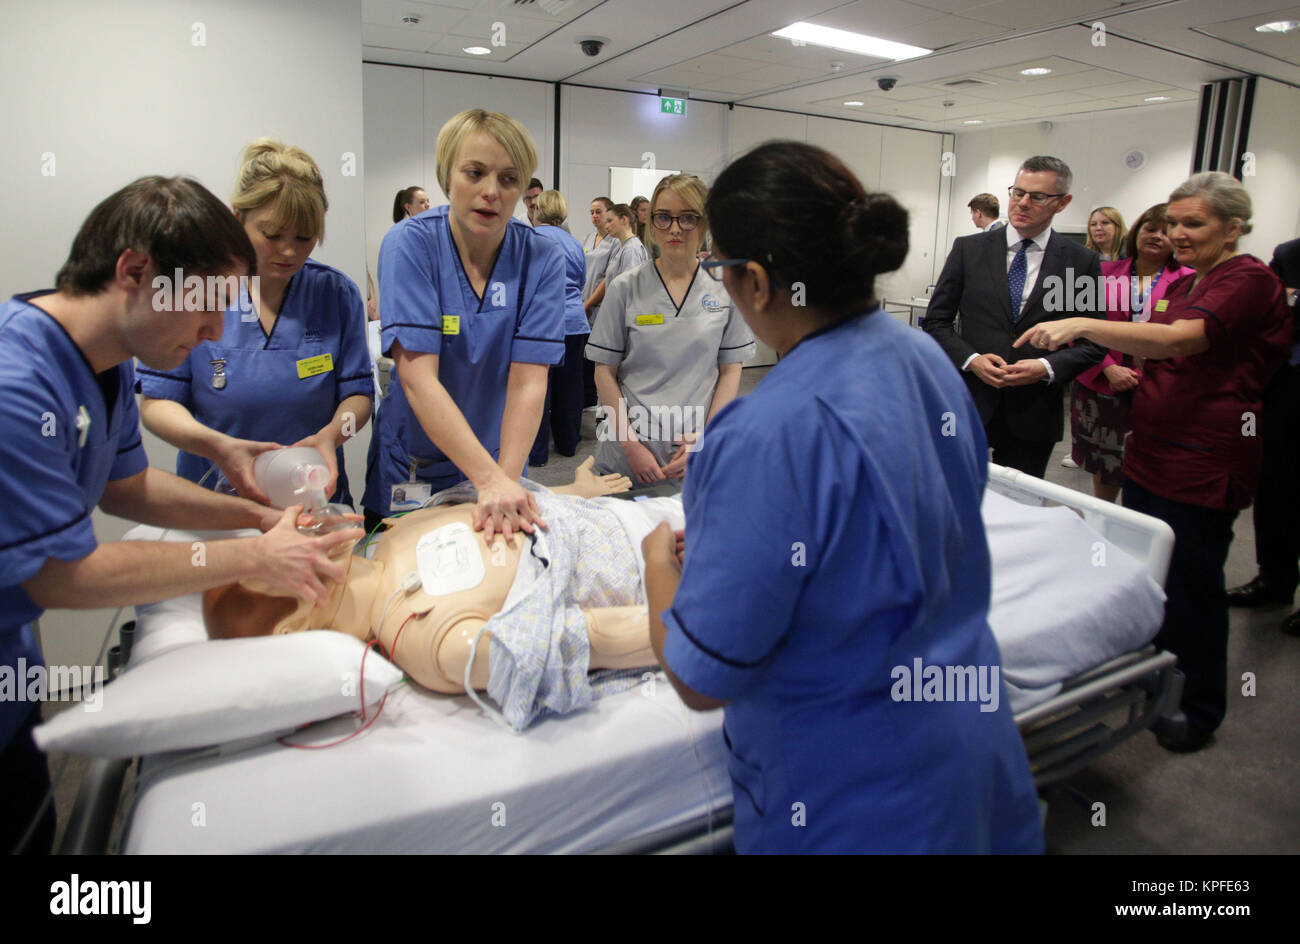 El Secretario de Hacienda de escocés Derek Mackay (segundo a la derecha) observa una sesión de enseñanza sobre reanimación cardio-pulmonar (CPR) en un entorno simulado de Ward, en el centro de enseñanza y aprendizaje, el Queen Elizabeth Hospital Universitario, Glasgow. Foto de stock